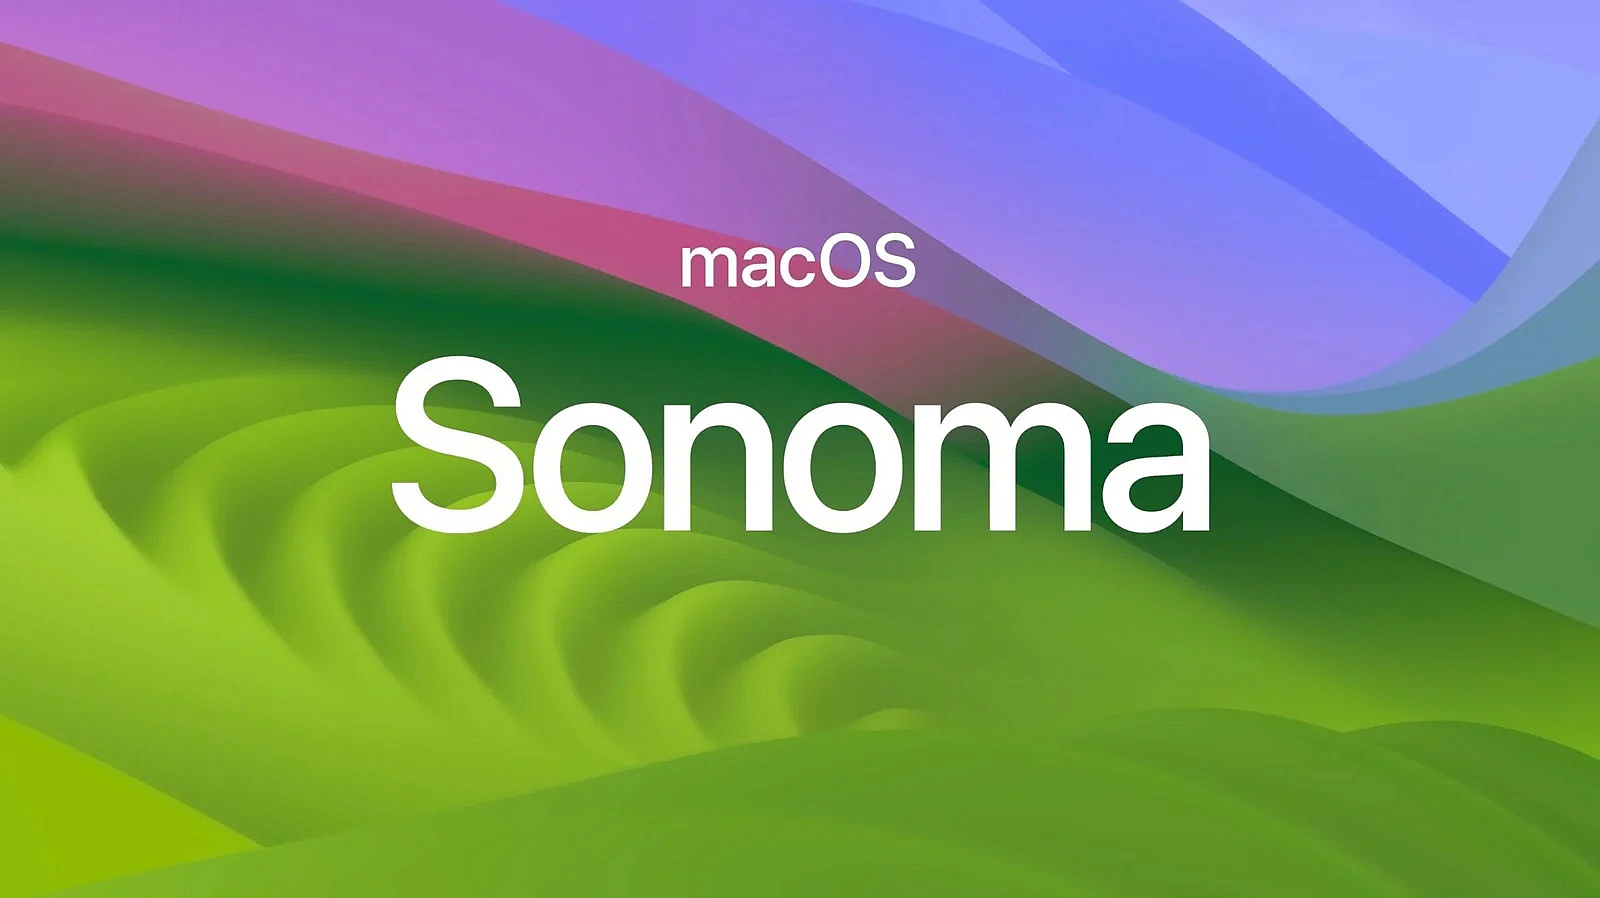 Čistá instalace macOS Sonoma z USB flash disku